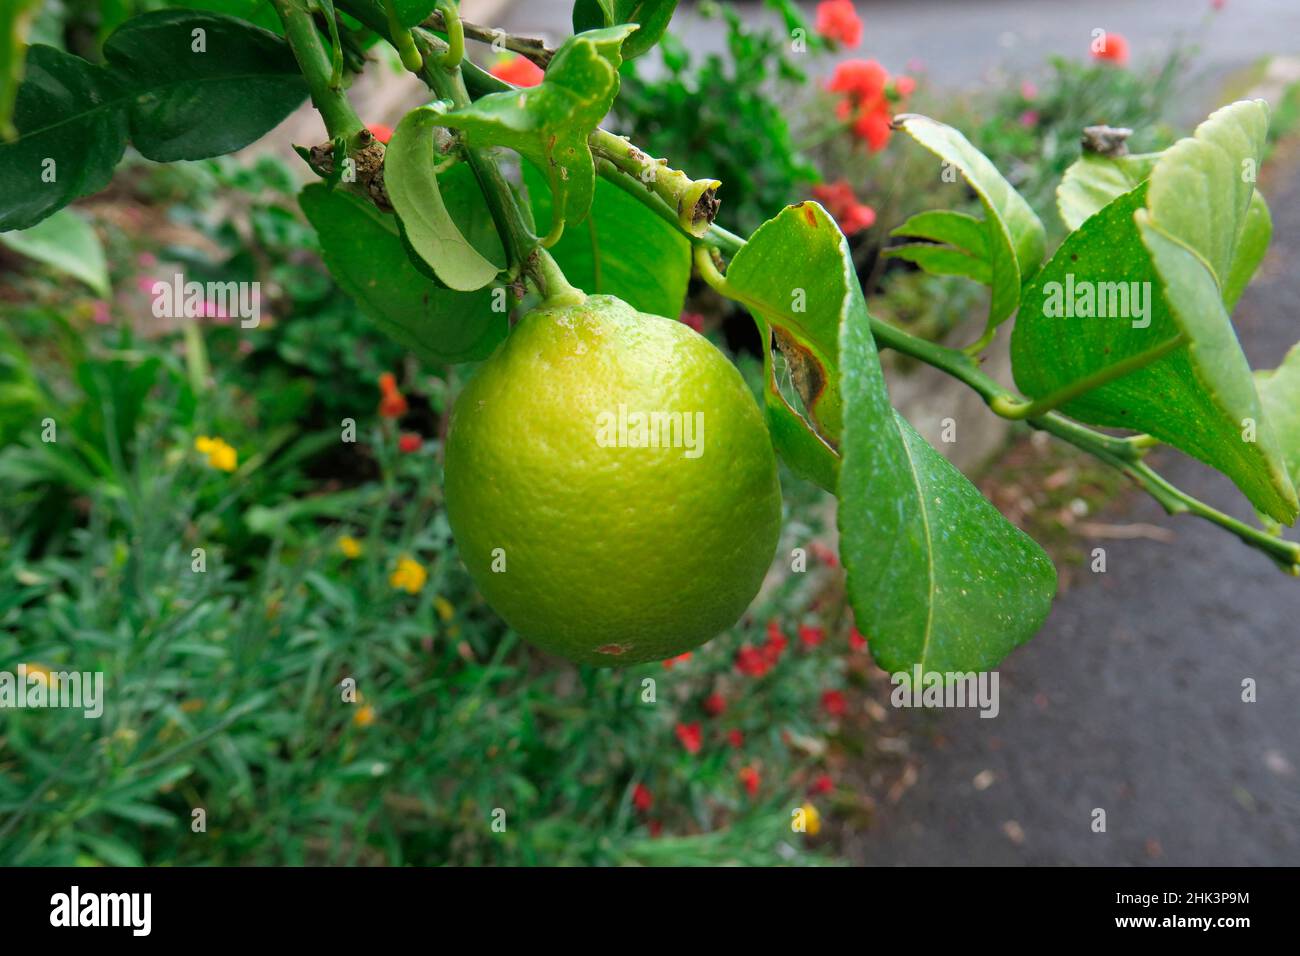 Lemon (Citrus x limon) fruit on tree Stock Photo